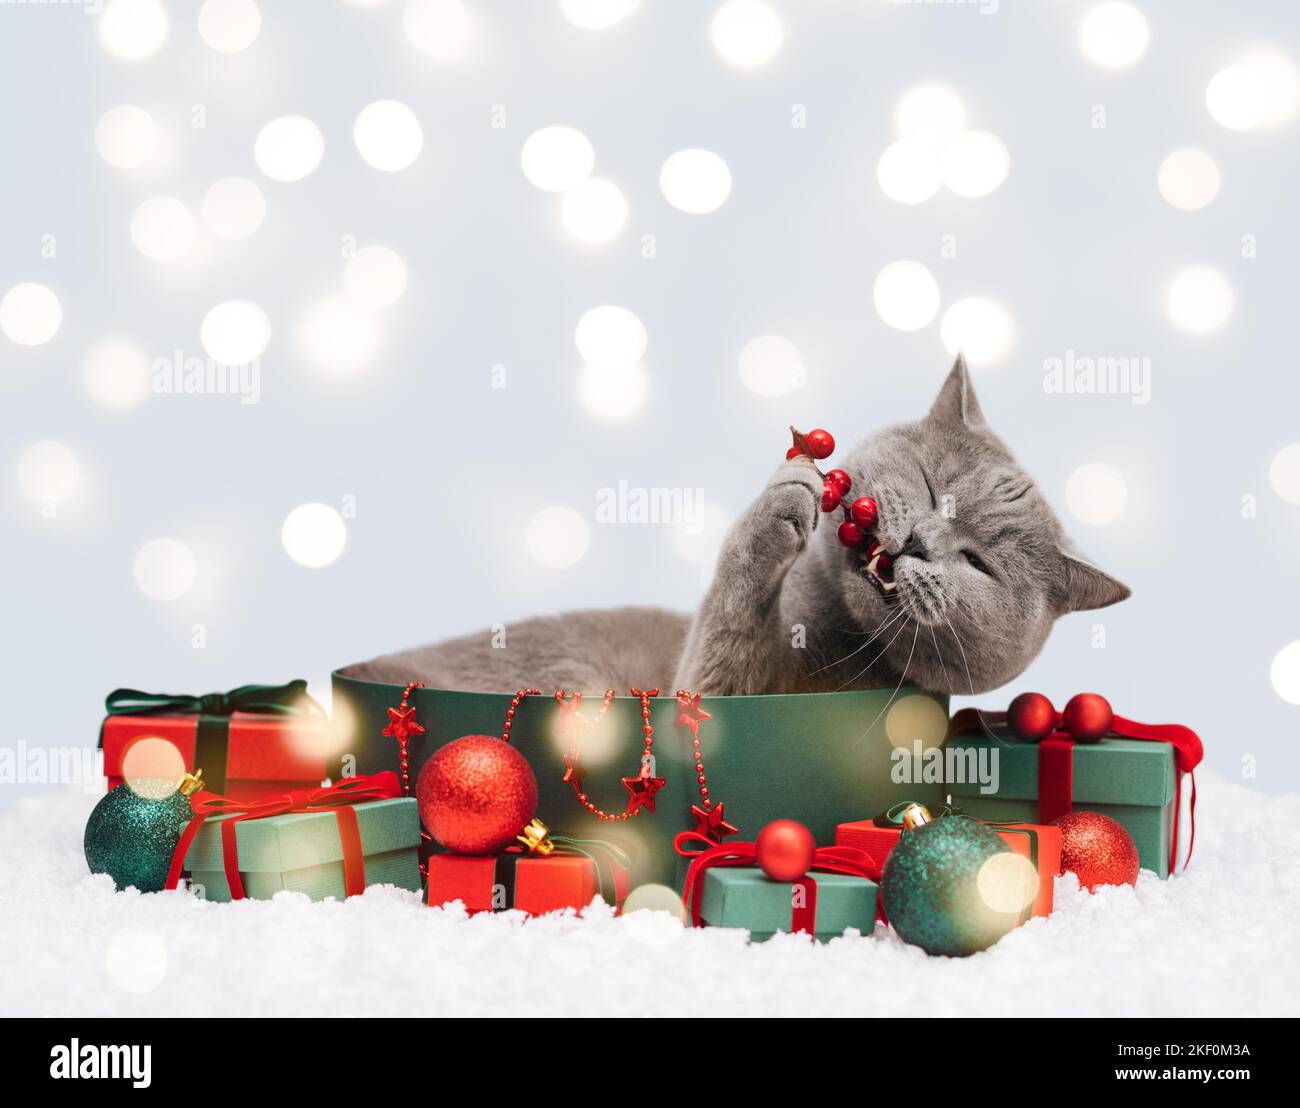 Gatto di Natale in una scatola regalo morde l'arredamento festivo. Gatto britannico con scatole regalo su uno sfondo invernale innevato con luci. Biglietto di auguri per il nuovo anno. Centro benessere Foto Stock